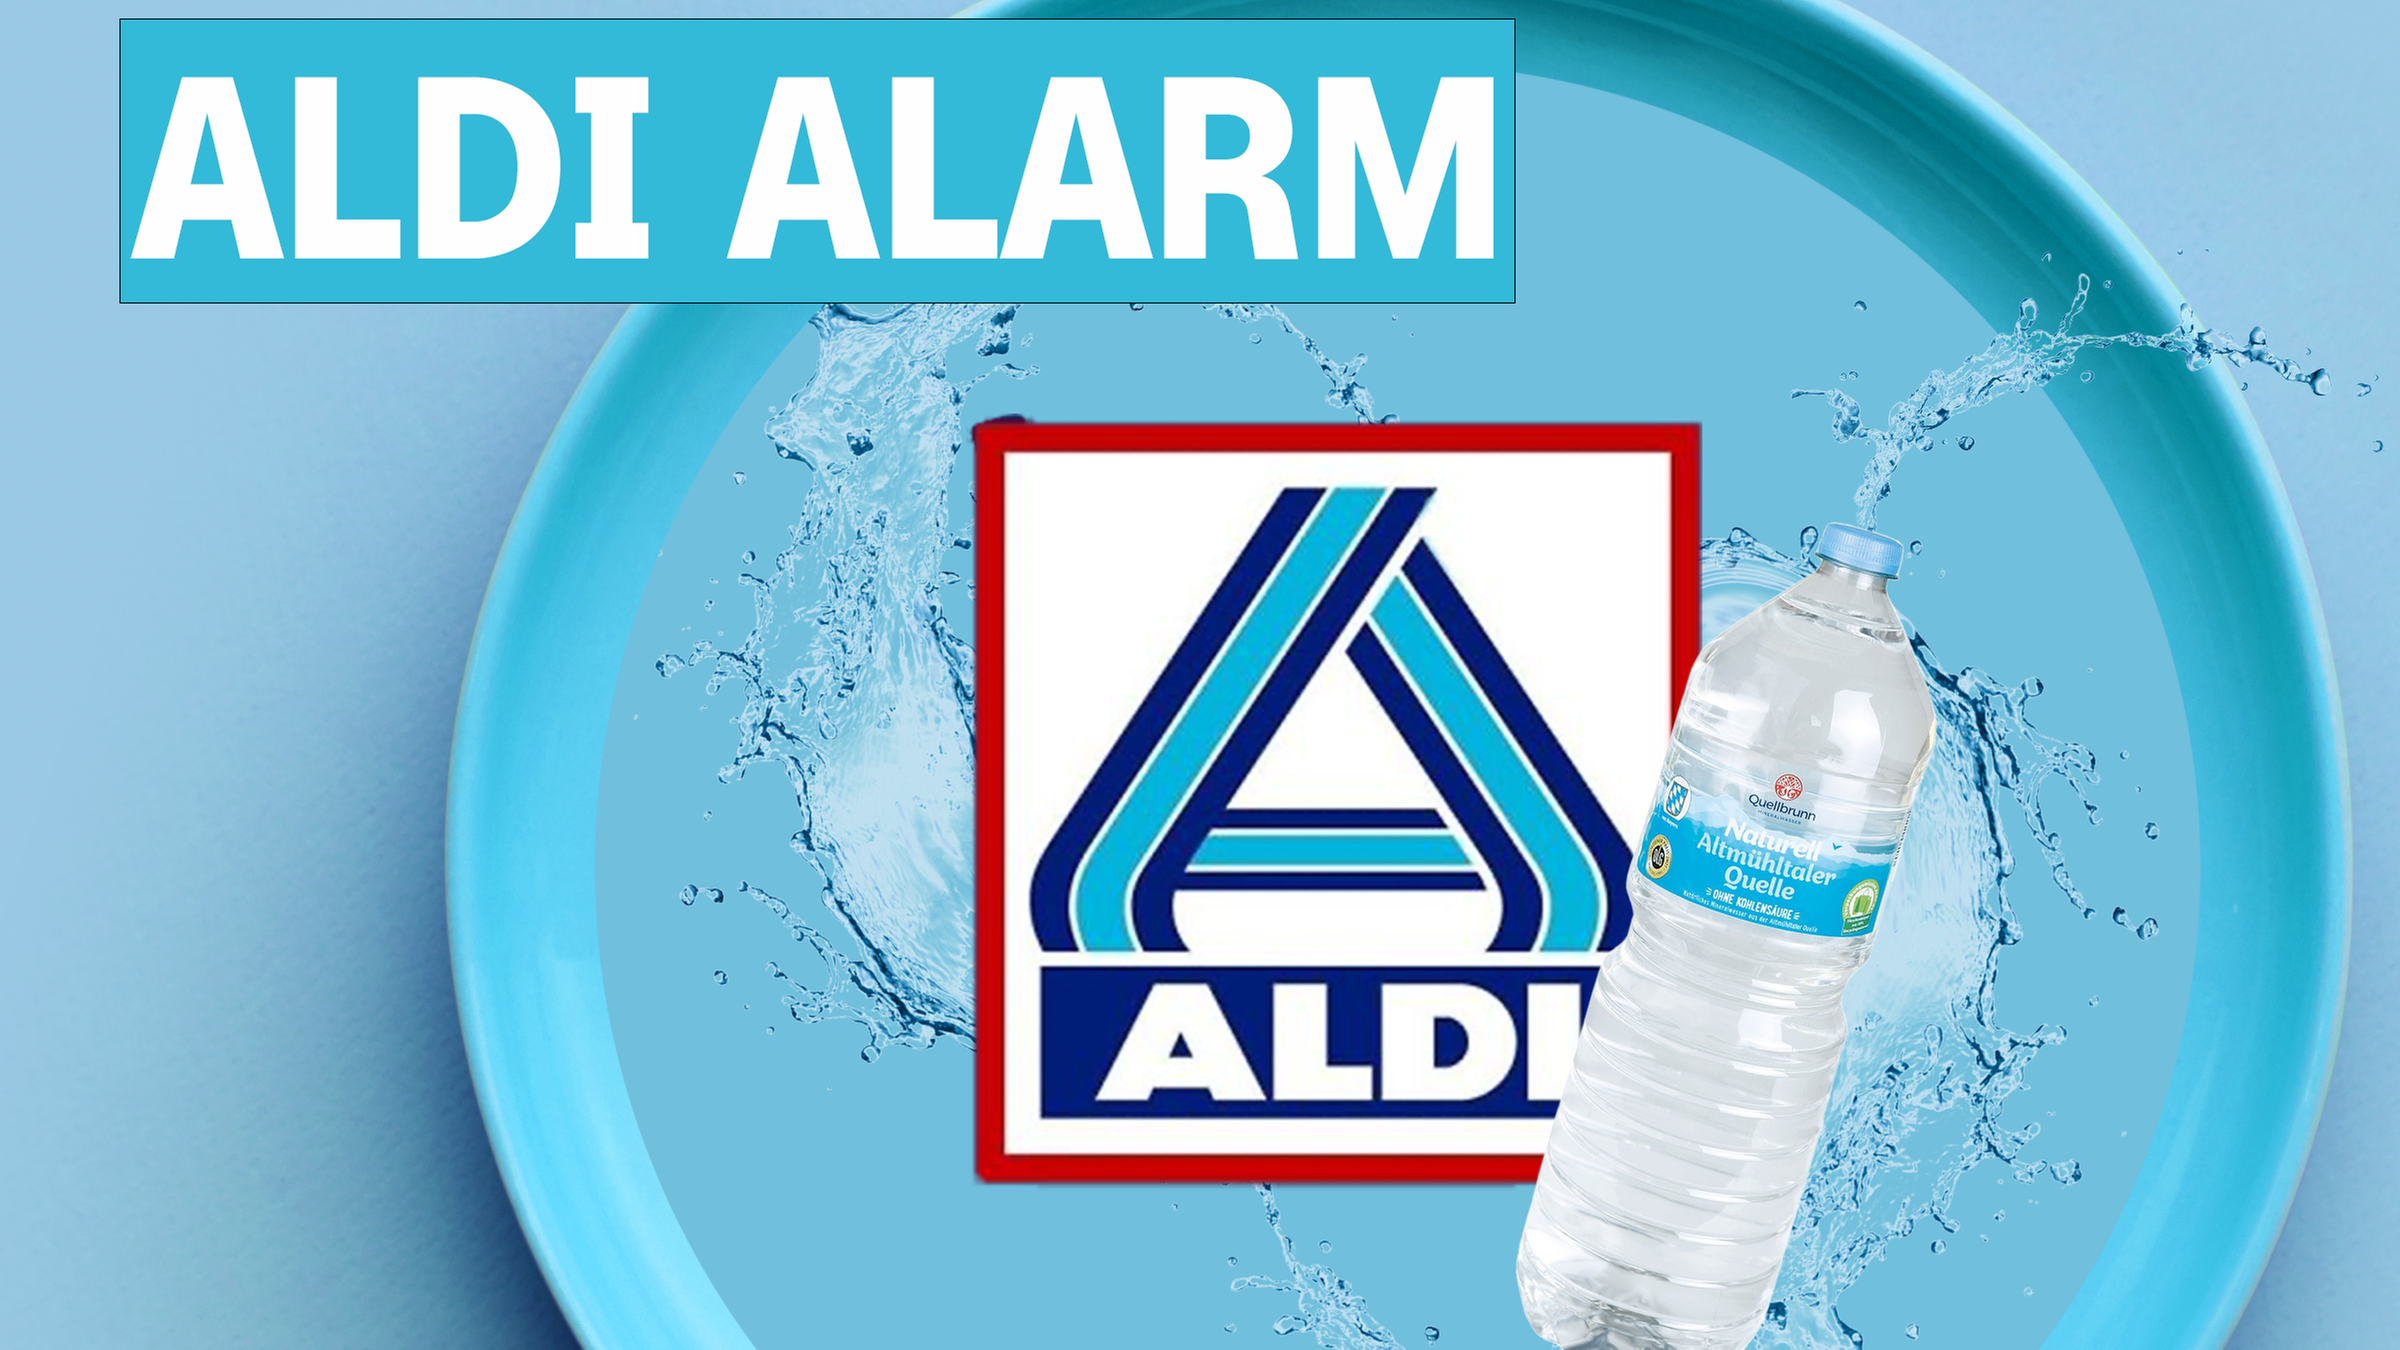 Man sieht das Aldi-Nord Logo und eine Wasserflasche der Eigenmarke, aus der Wasser sprudelt.